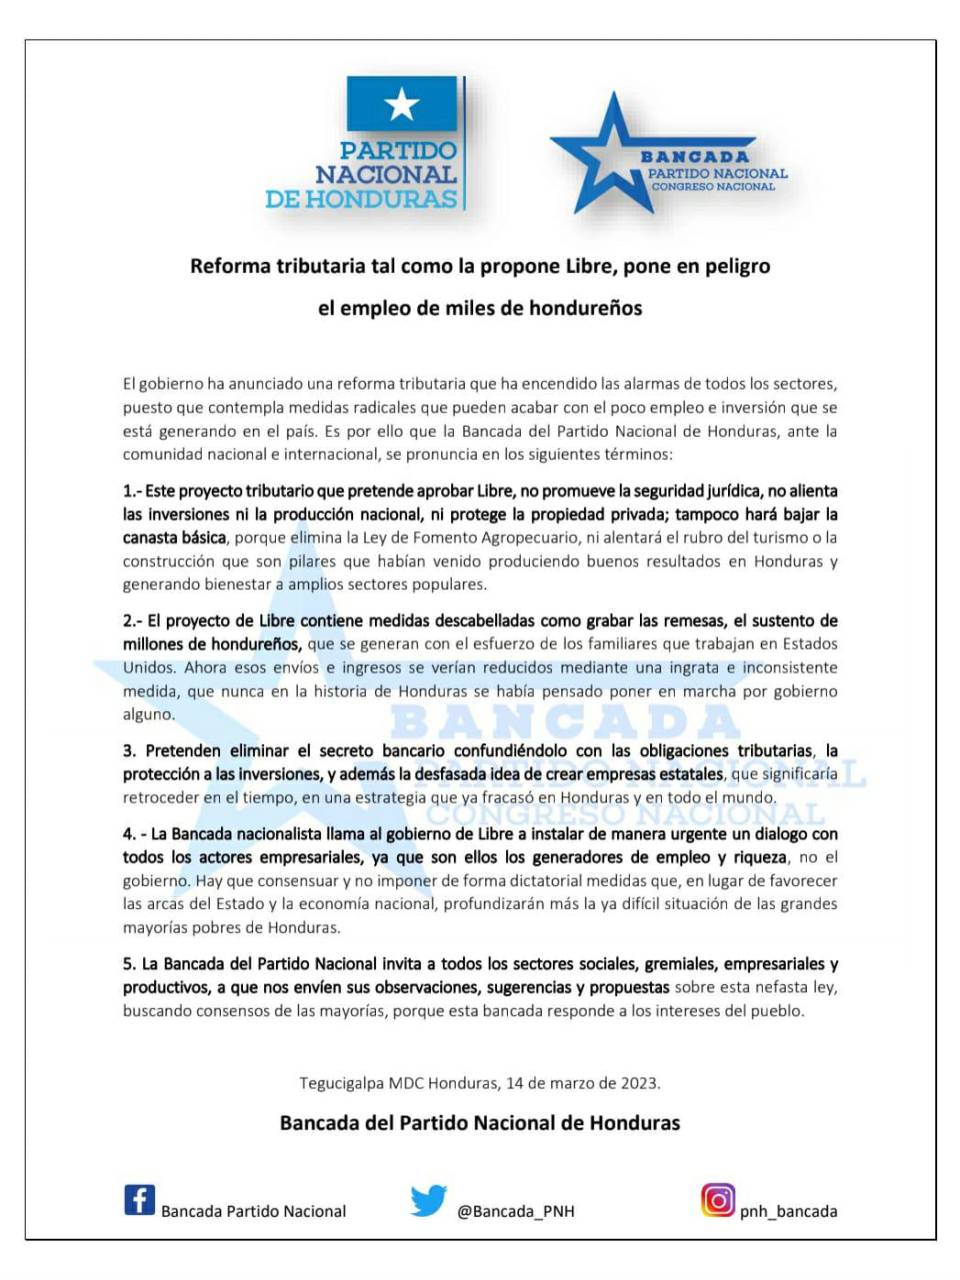 Bancada del Partido Nacional asegura que Ley de Justicia Tributaria “pone en peligro empleos de hondureños”